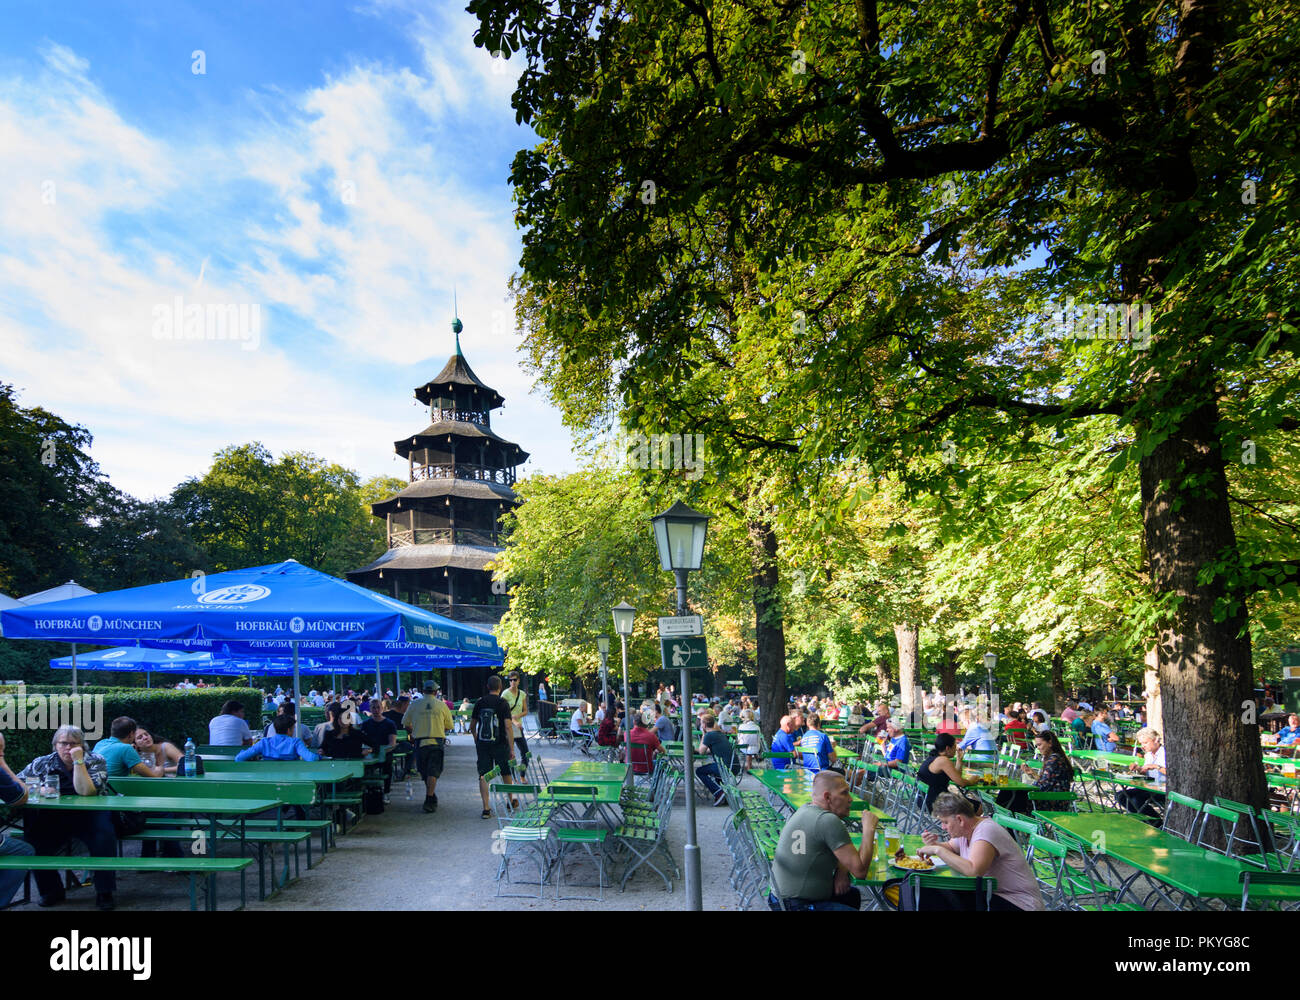 München, Munich: Biergarten am Chinesischen Turm (Beer garden at the Chinese tower) in Englischer Garten (English Garden), Oberbayern, Upper Bavaria,  Stock Photo